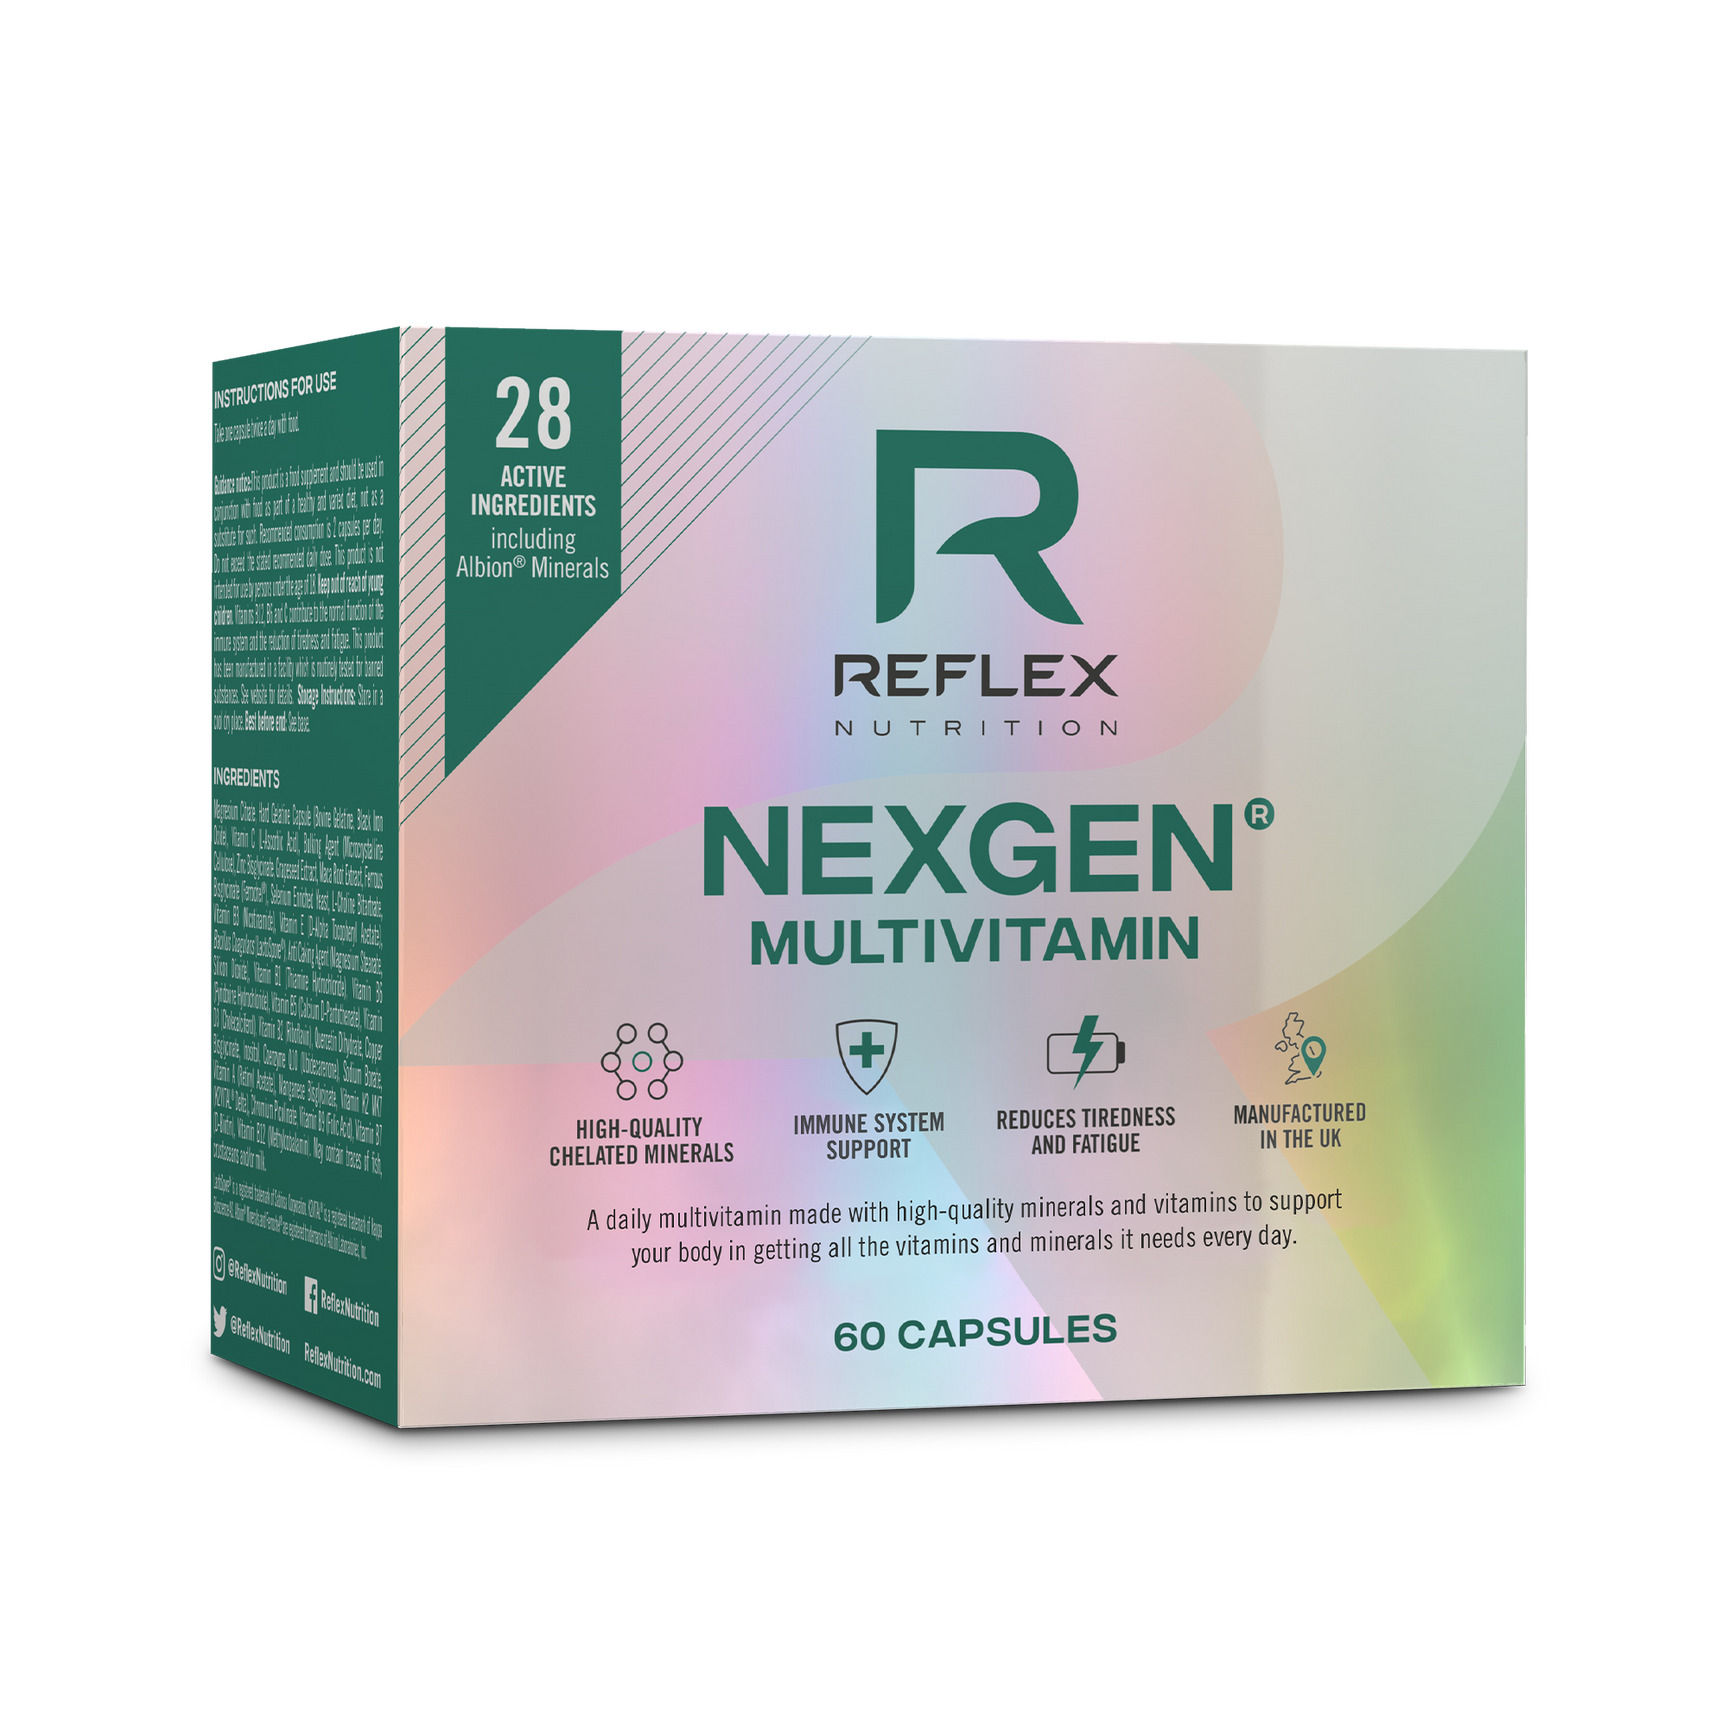 Nexgen® Multivitamin – Reflex Nutrition